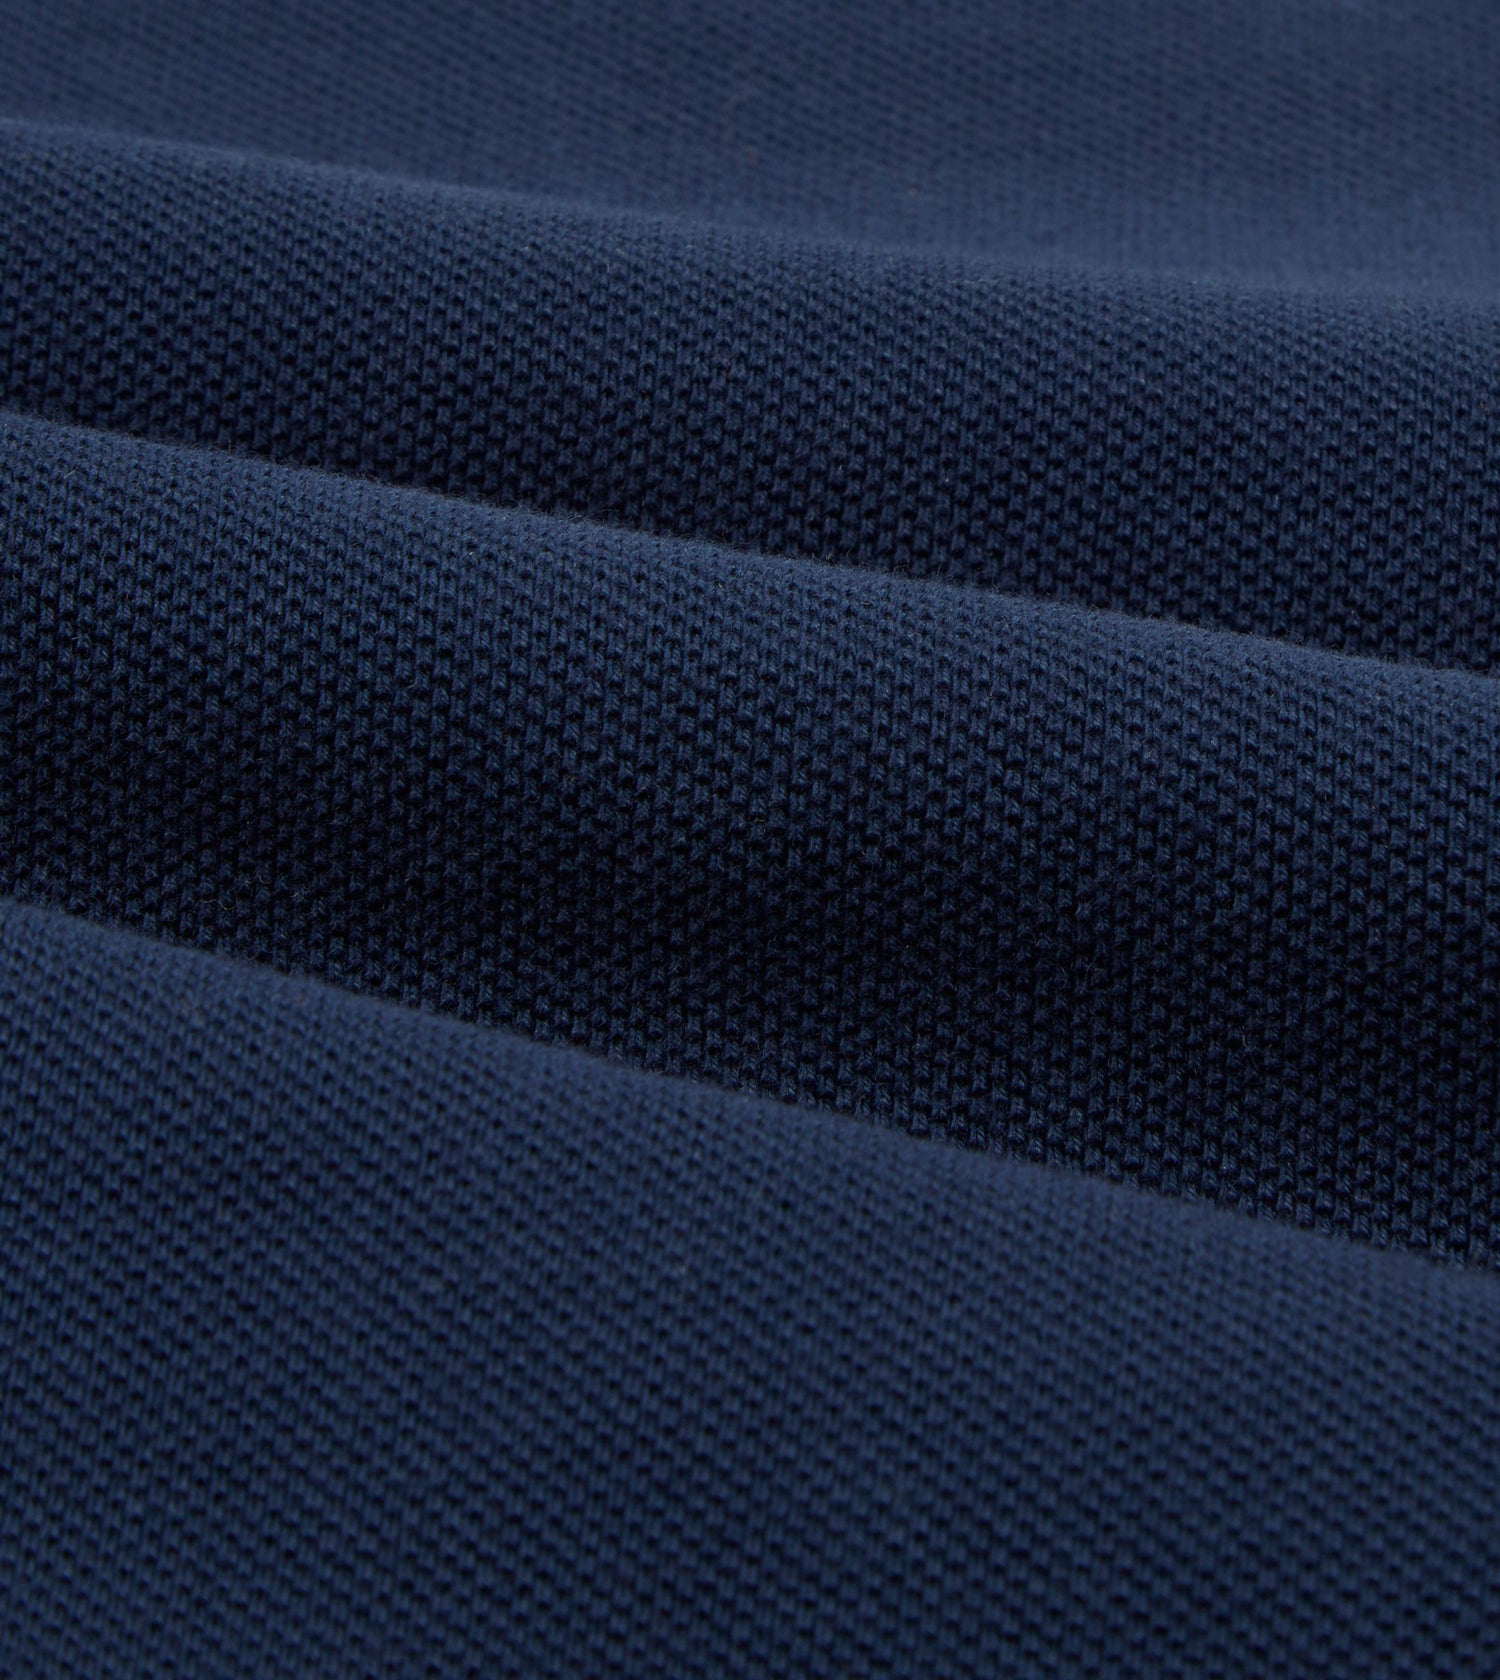 Navy Pique Cotton Long-Sleeve Polo Shirt